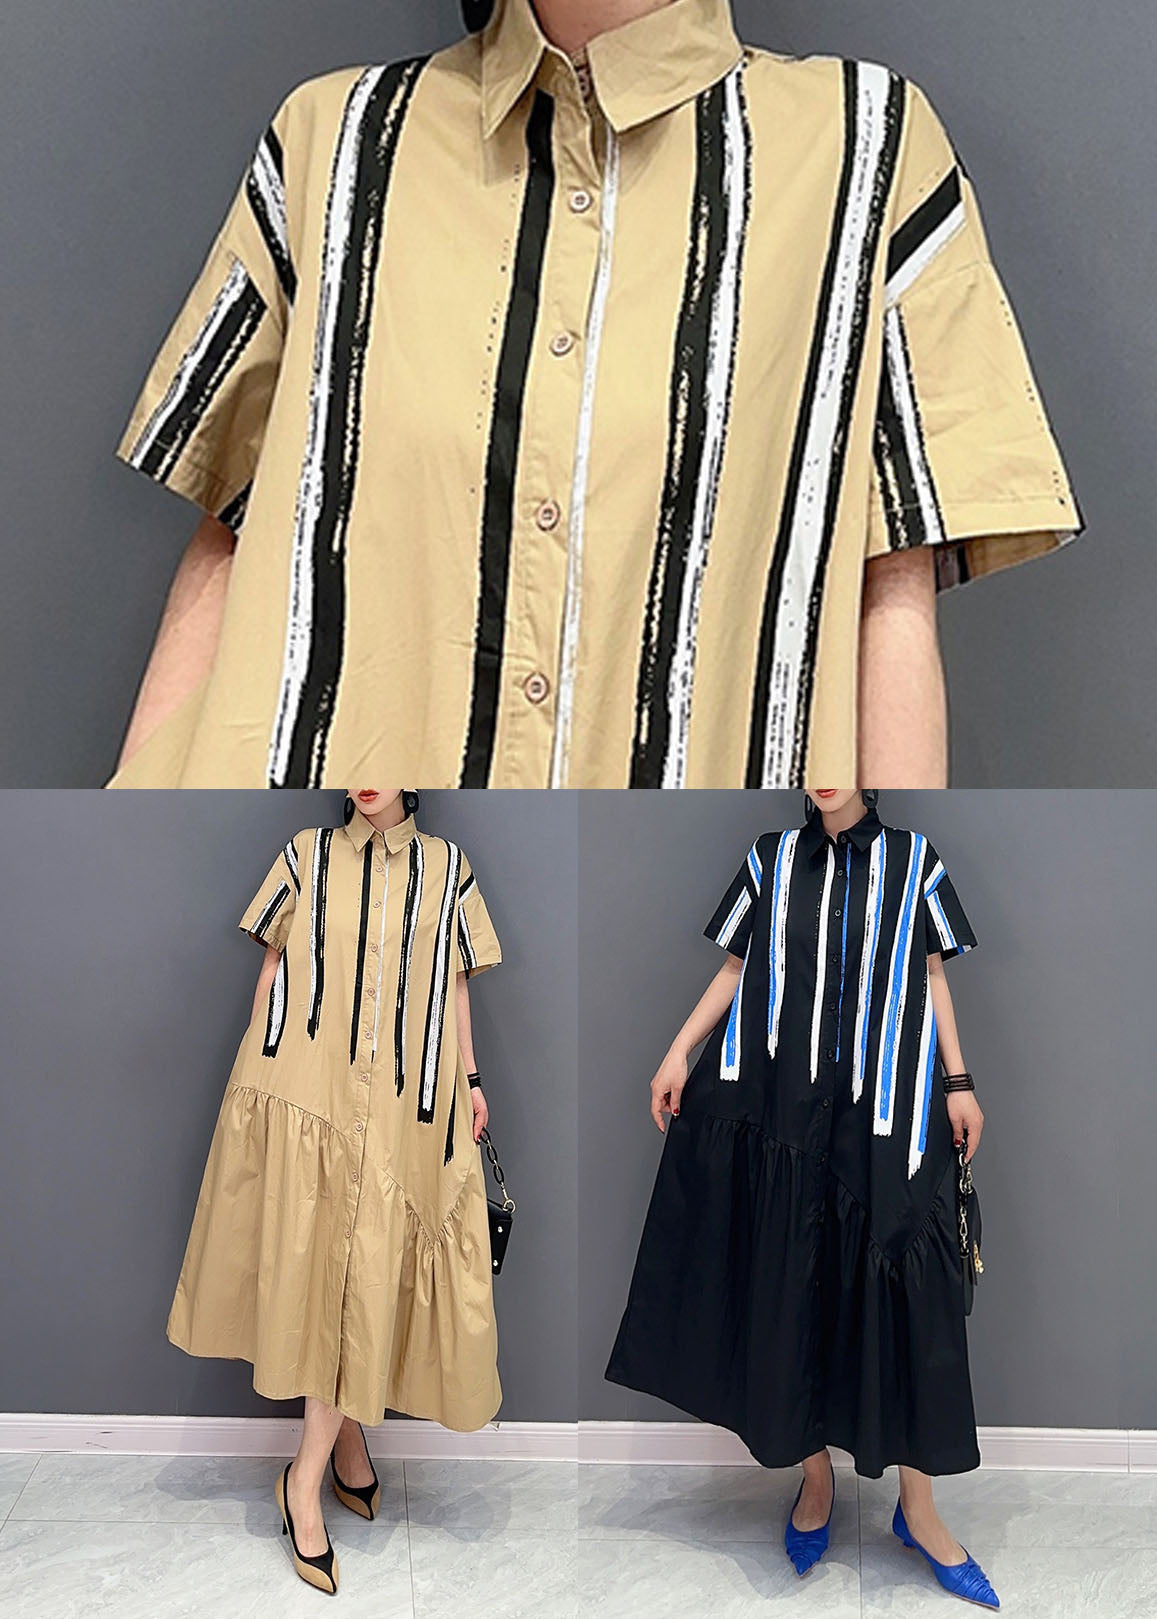 Italian Khaki Peter Pan Collar Patchwork Cotton Shirt Dress Summer LY0575 - fabuloryshop